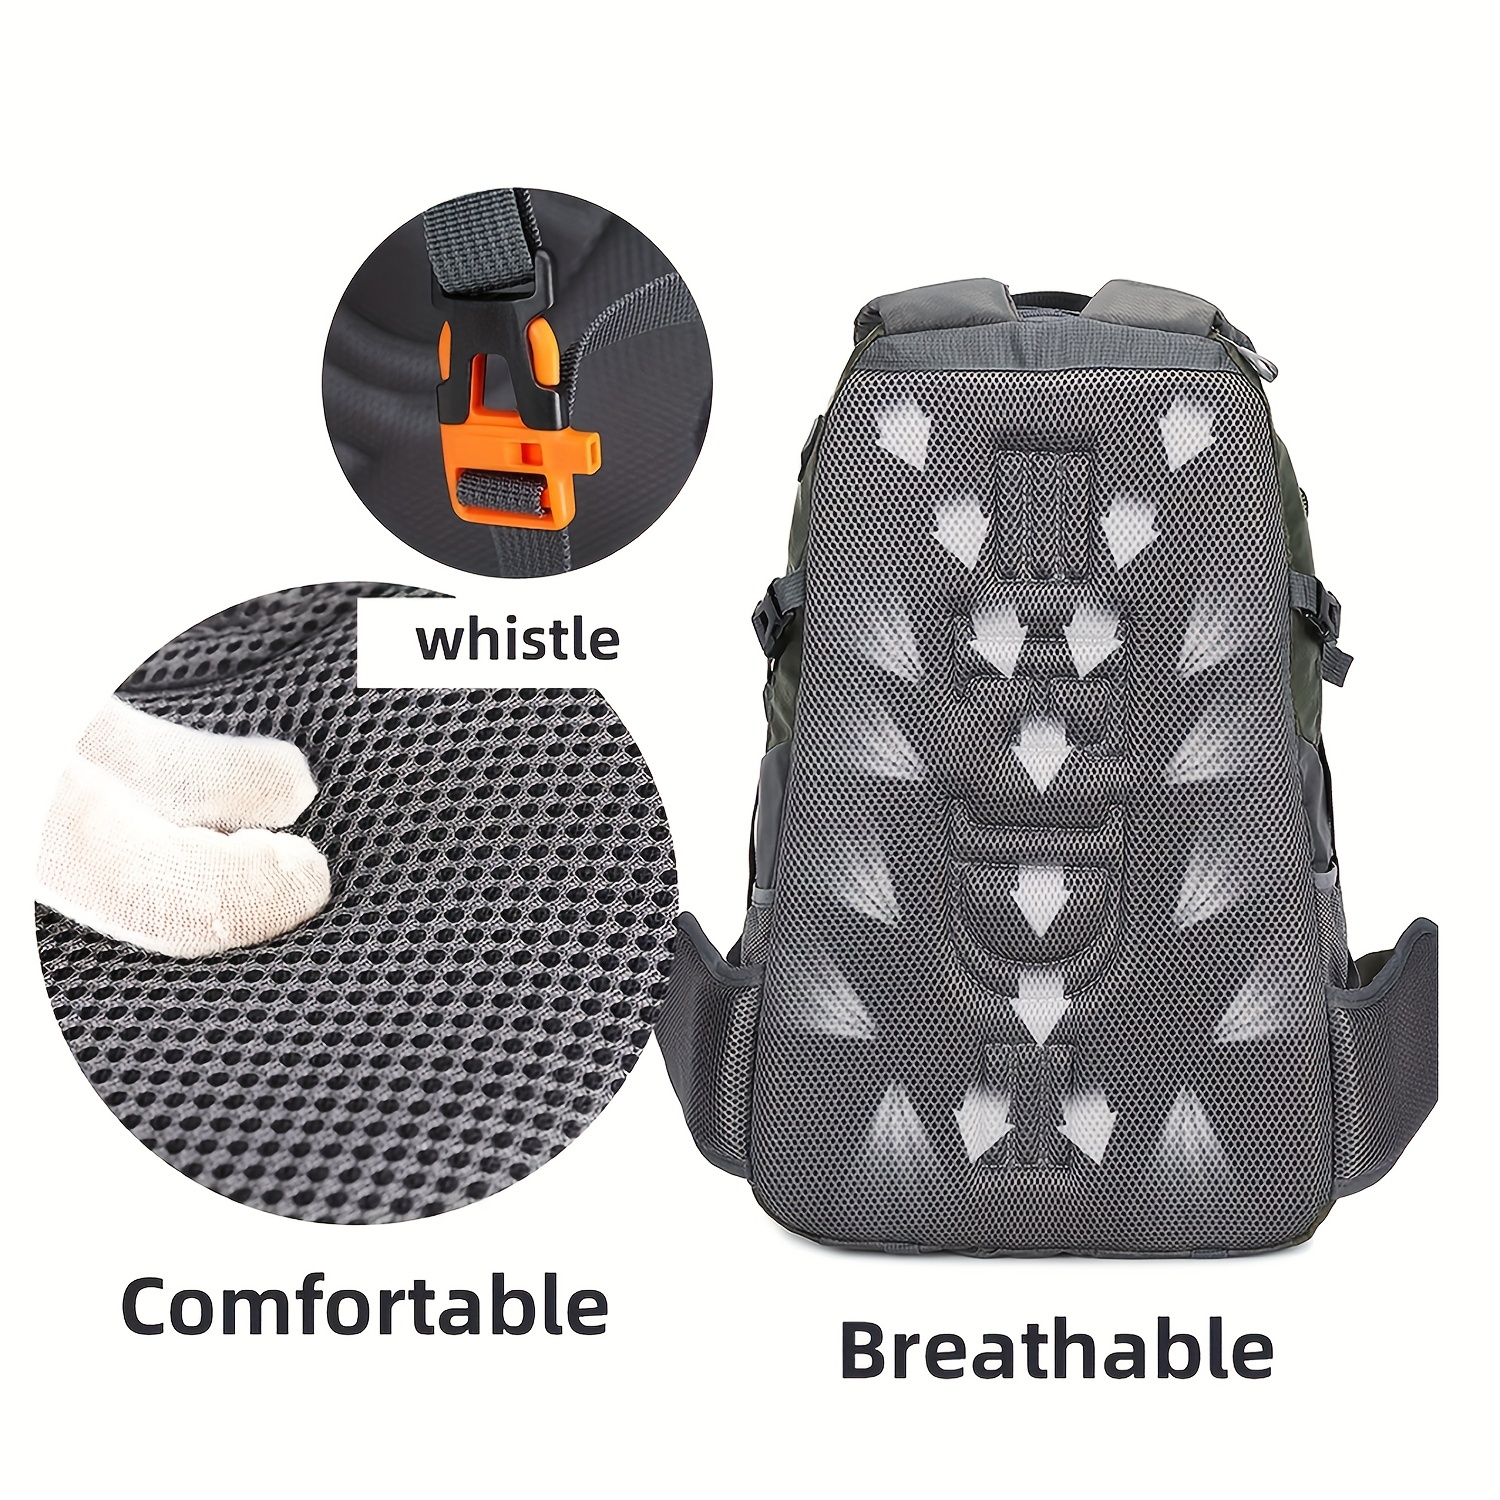 Mochila de senderismo de 40 L, ligera, transpirable, para hombres y  mujeres, duradera, impermeable, bolsa de viaje deportiva al aire libre para